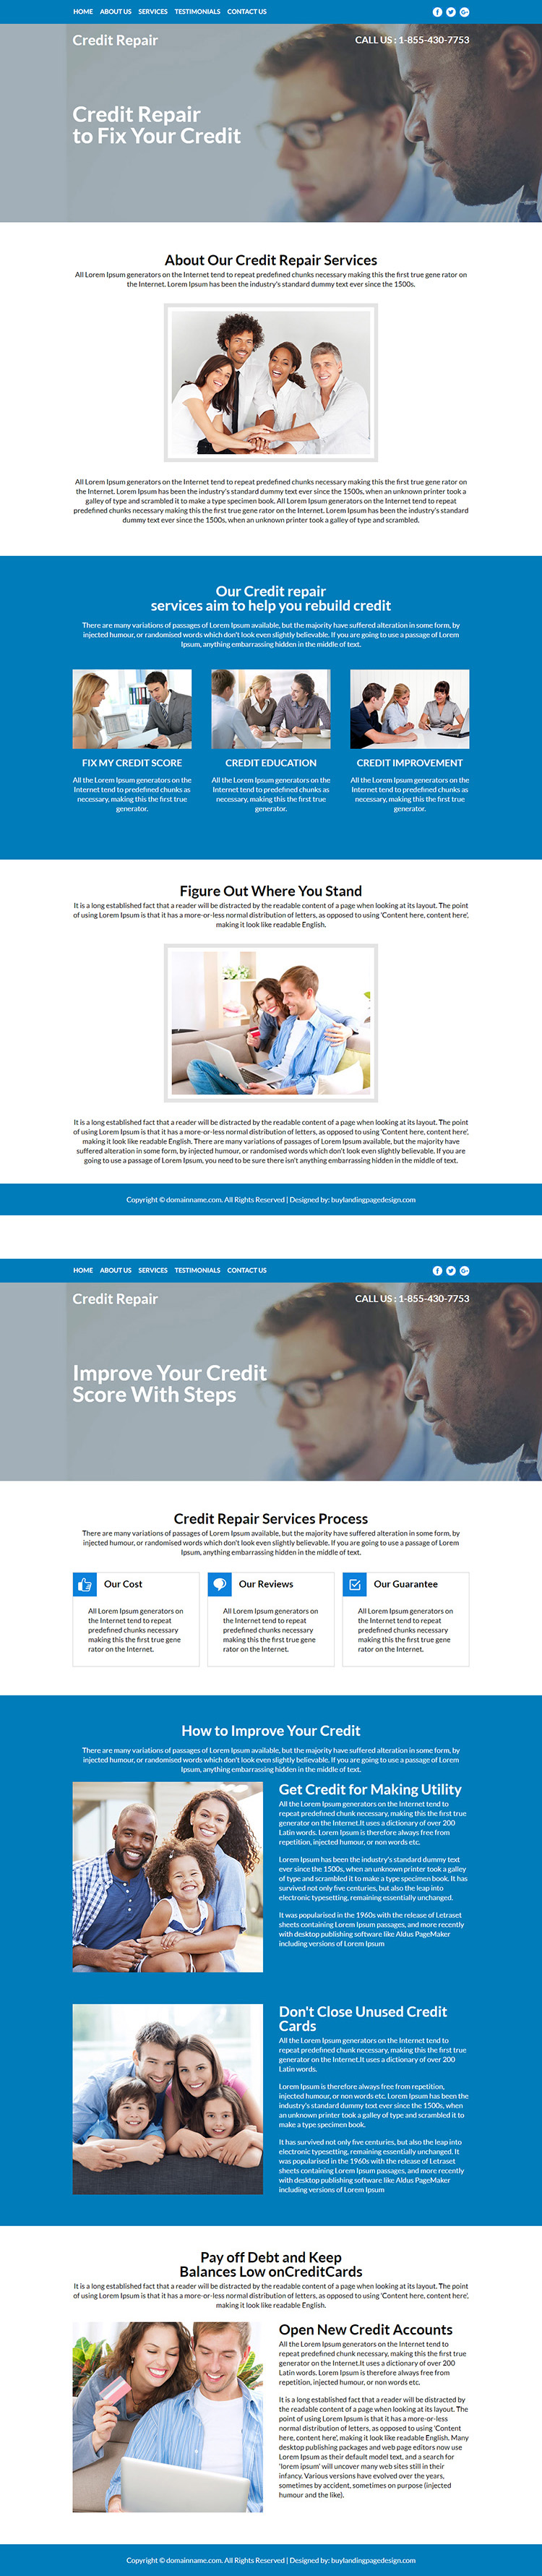 credit repair service responsive website design